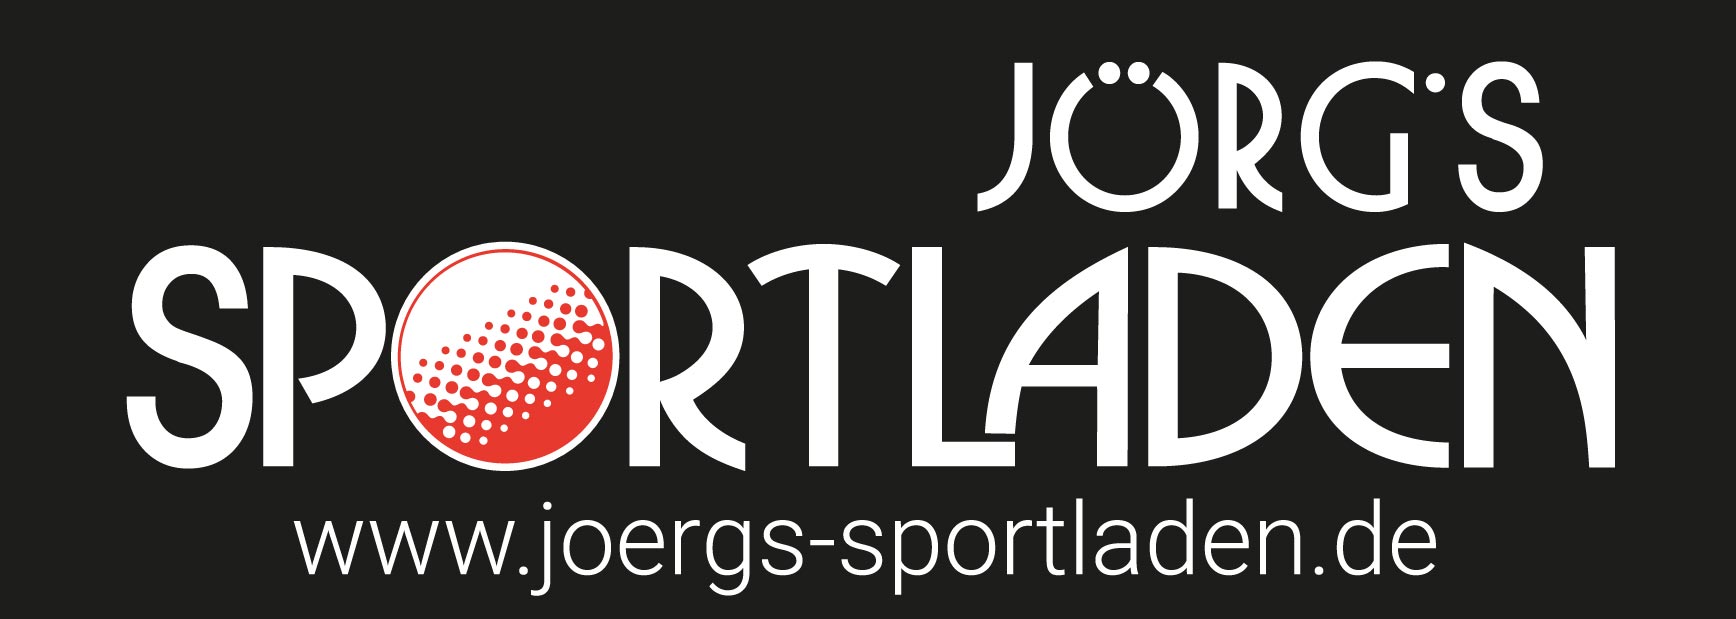 Jörgs Sportladen